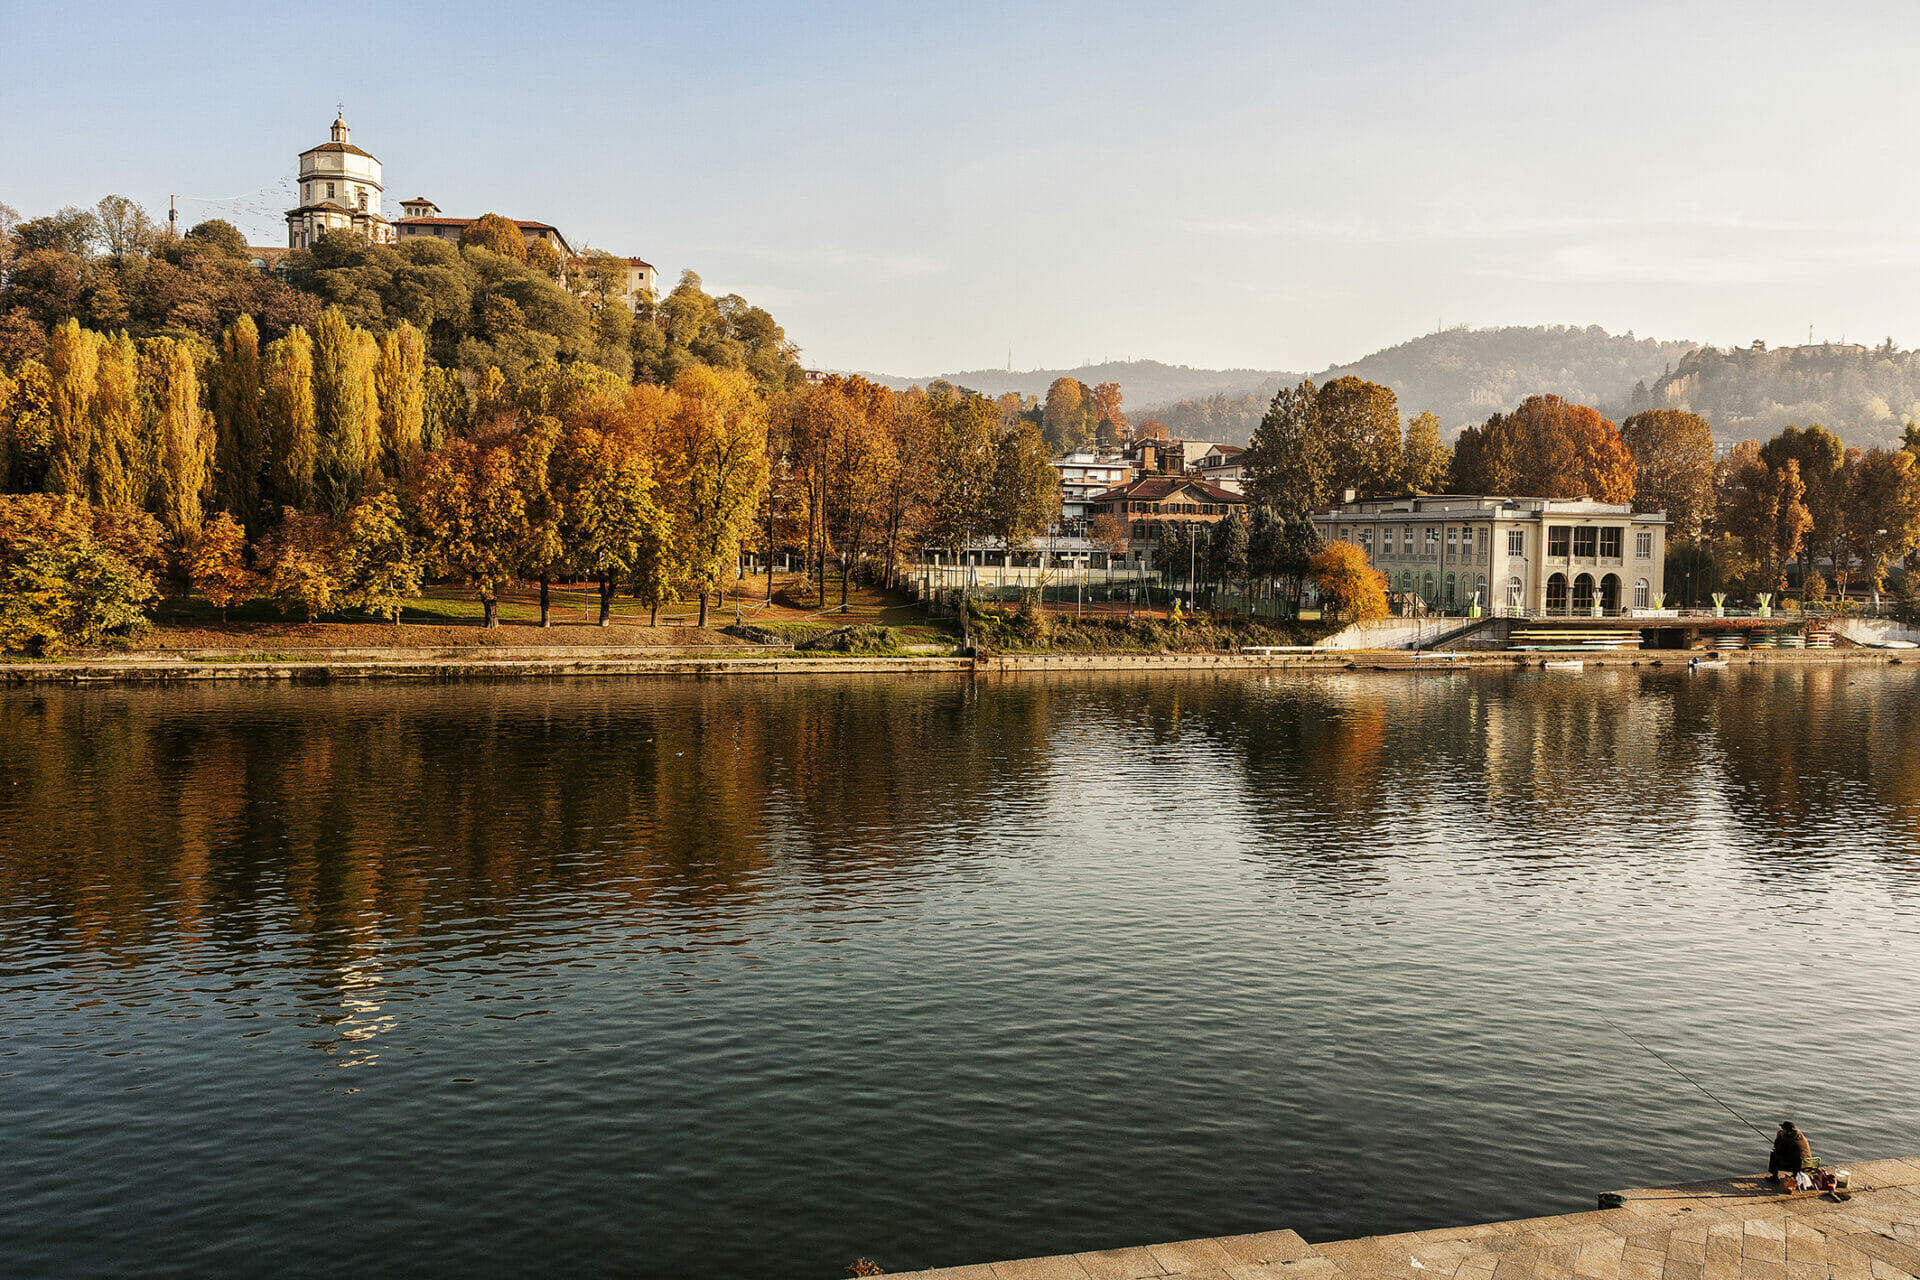 The Po river in Turin - courtesy Carlo Avataneo